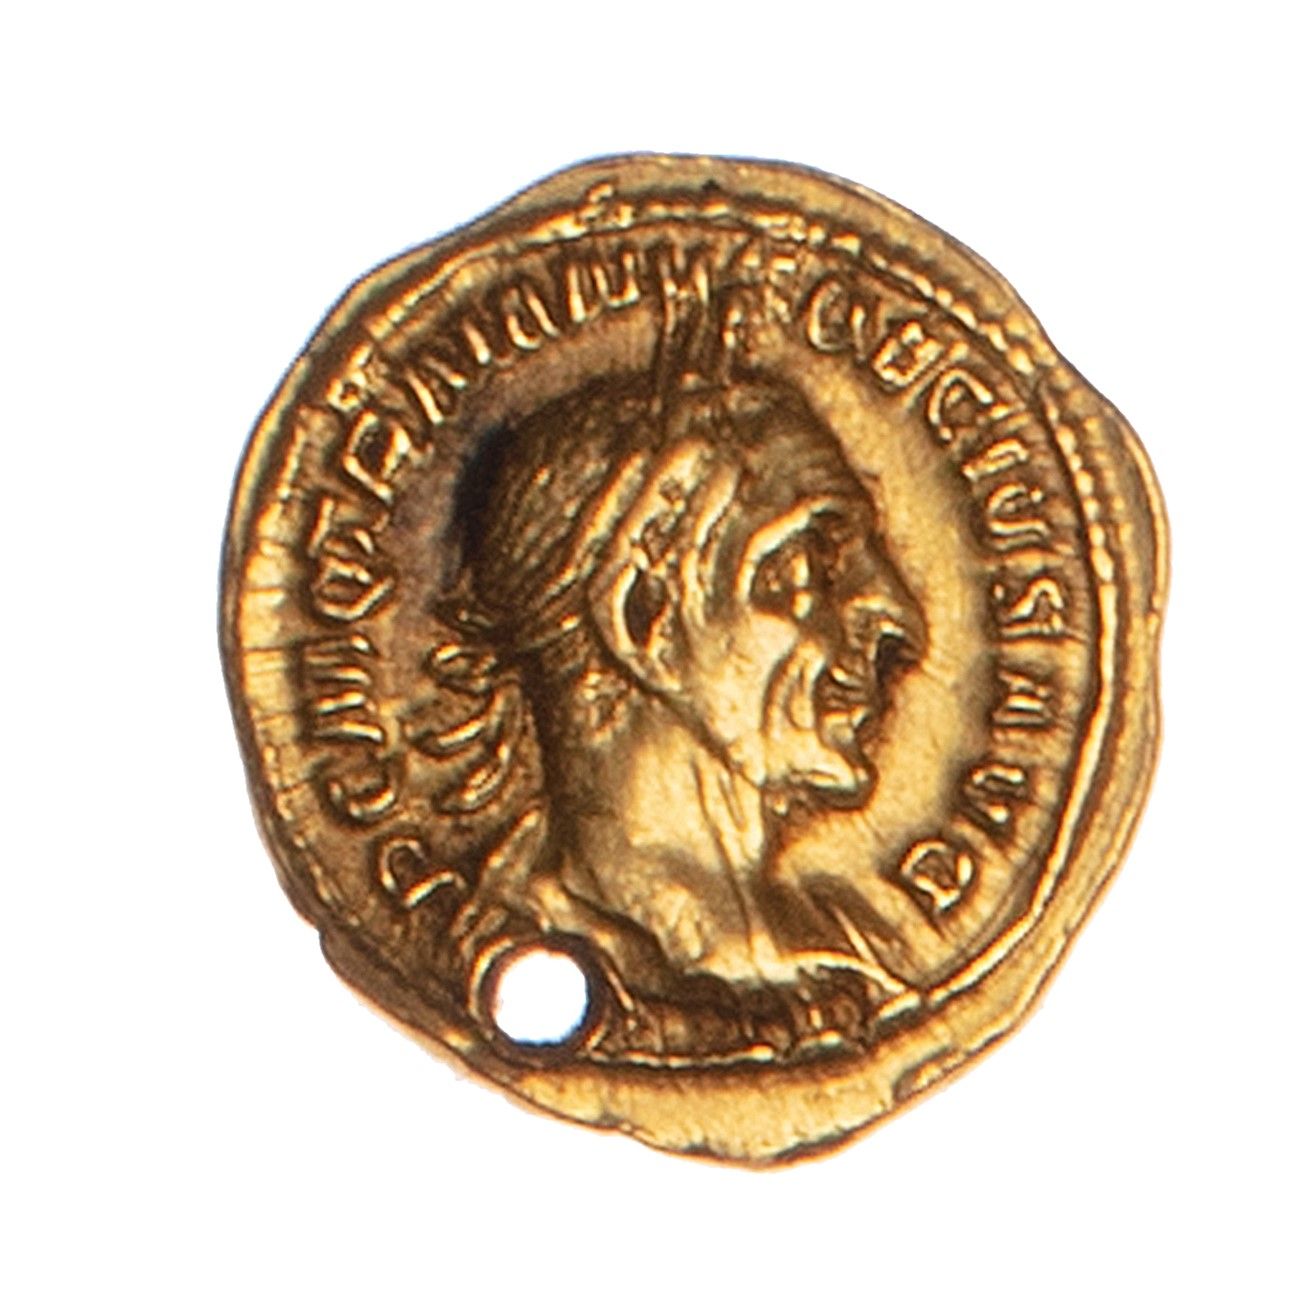 Null IMPERIO ROMANO - TRAJANO DECE (249-251)

Aureus 

Anverso: su busto lauread&hellip;